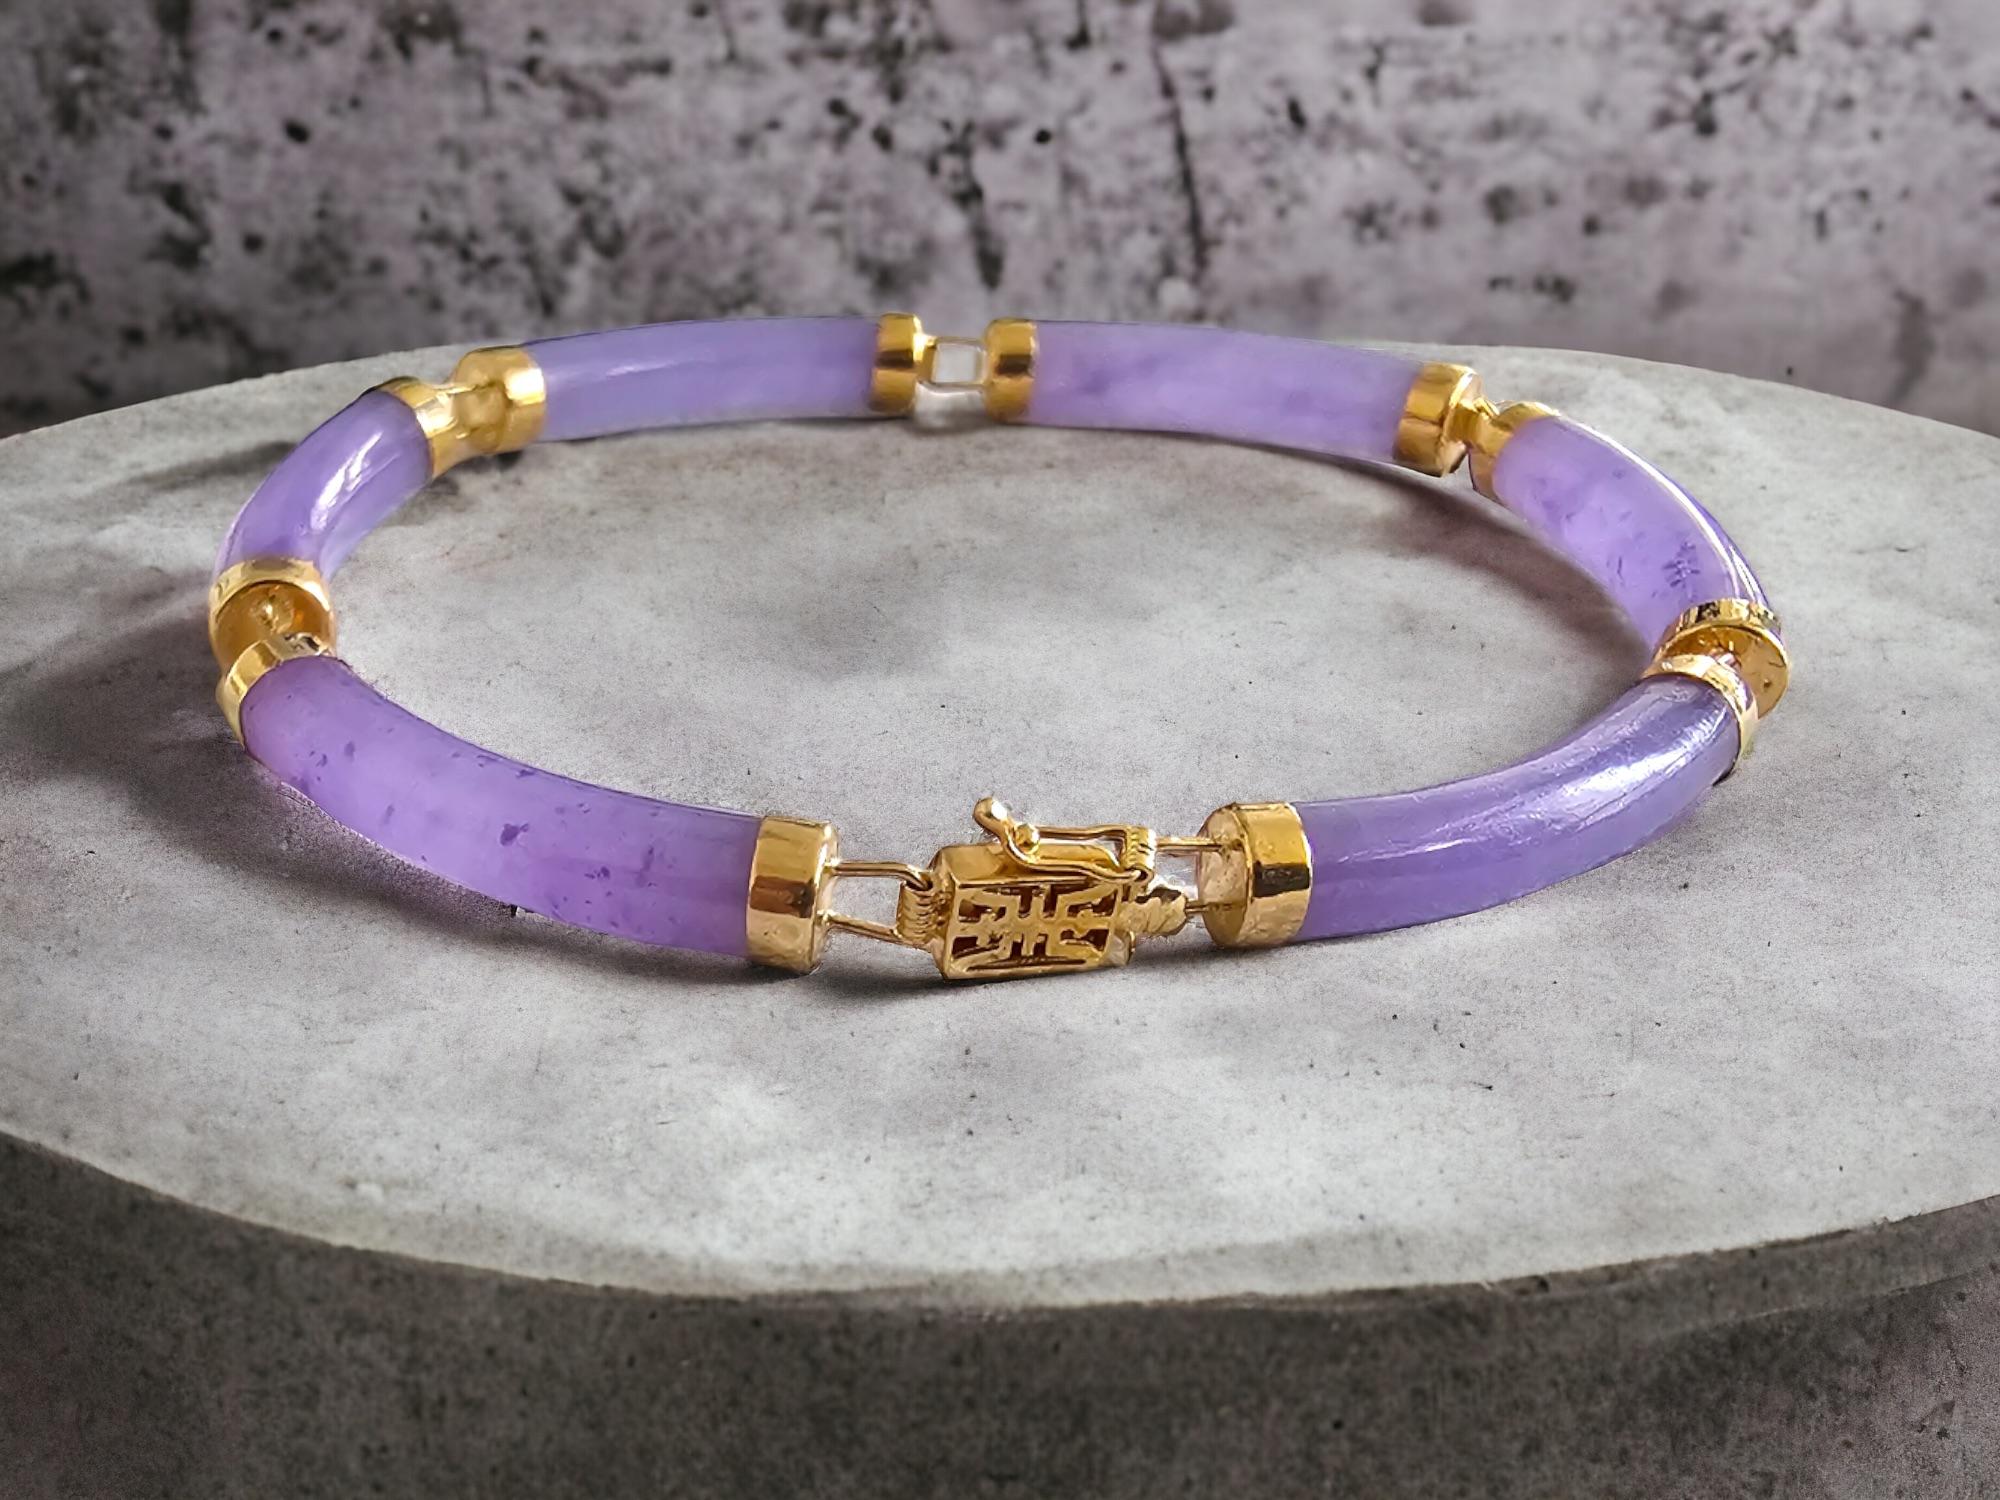 Fortune Purple Jade Tube Bars Armband mit 14K Solid Yellow Gold Links und Verschluss

Das 